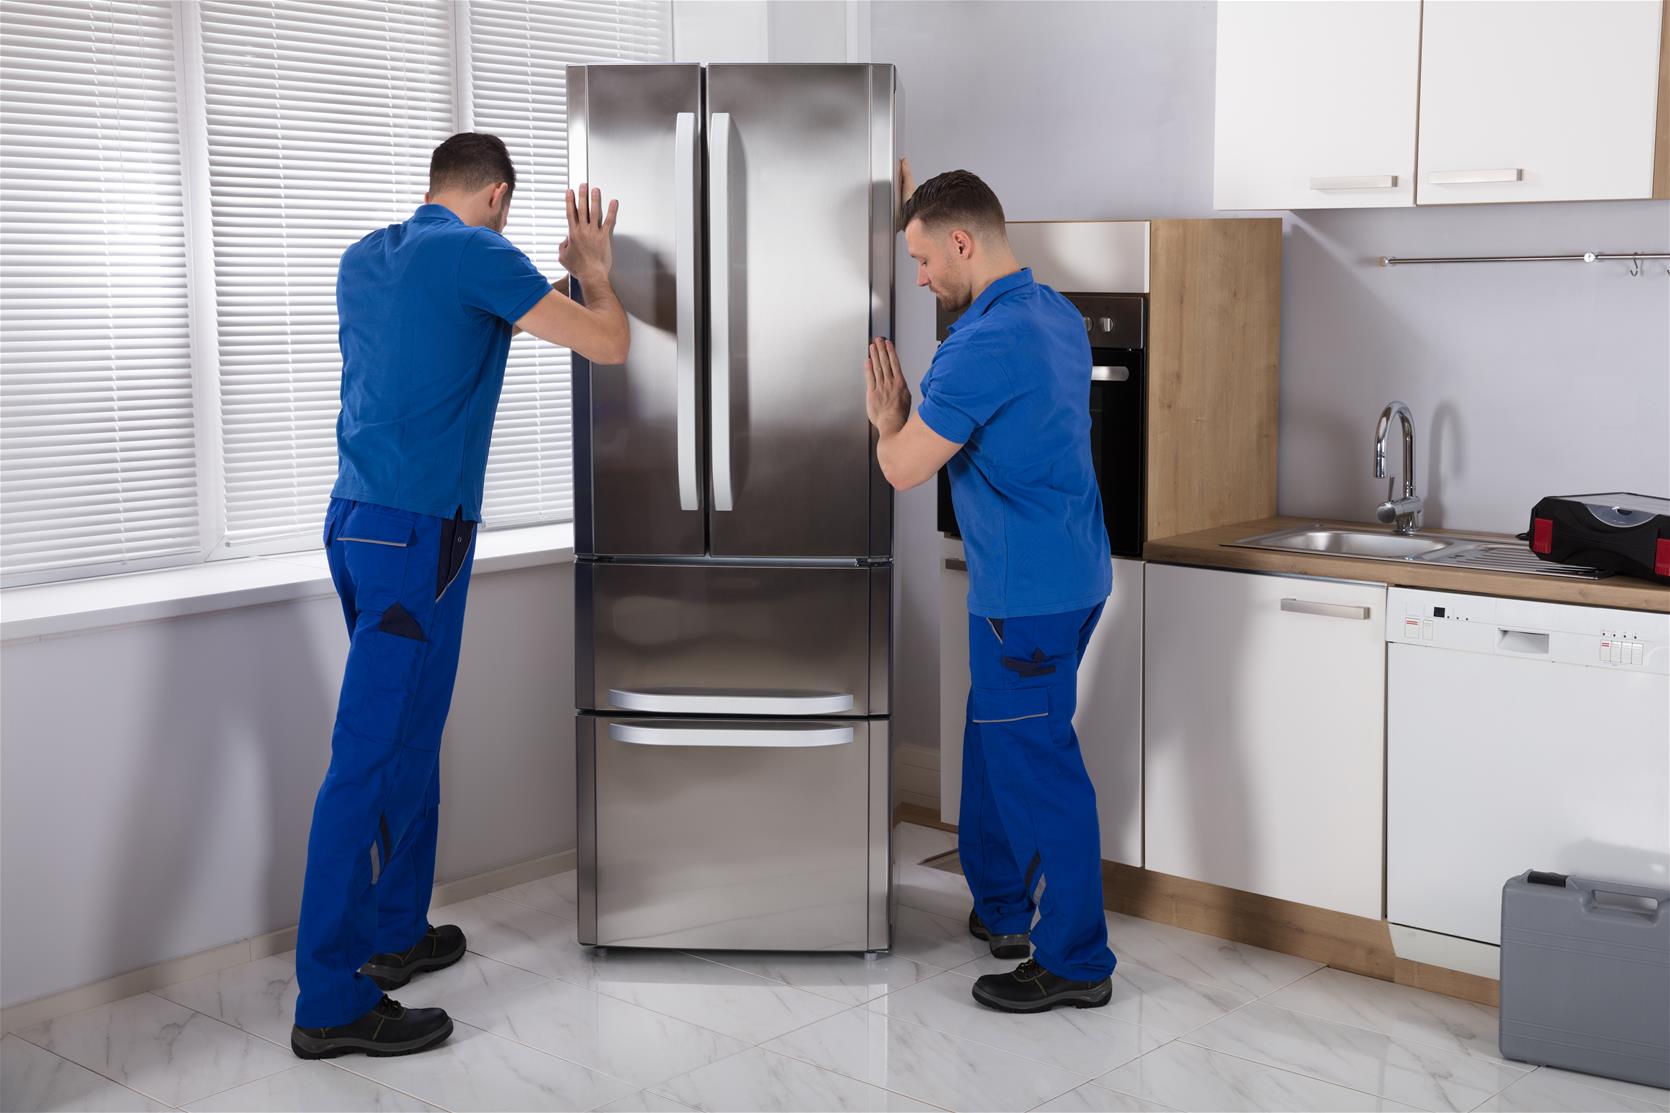 Men moving Refrigerator